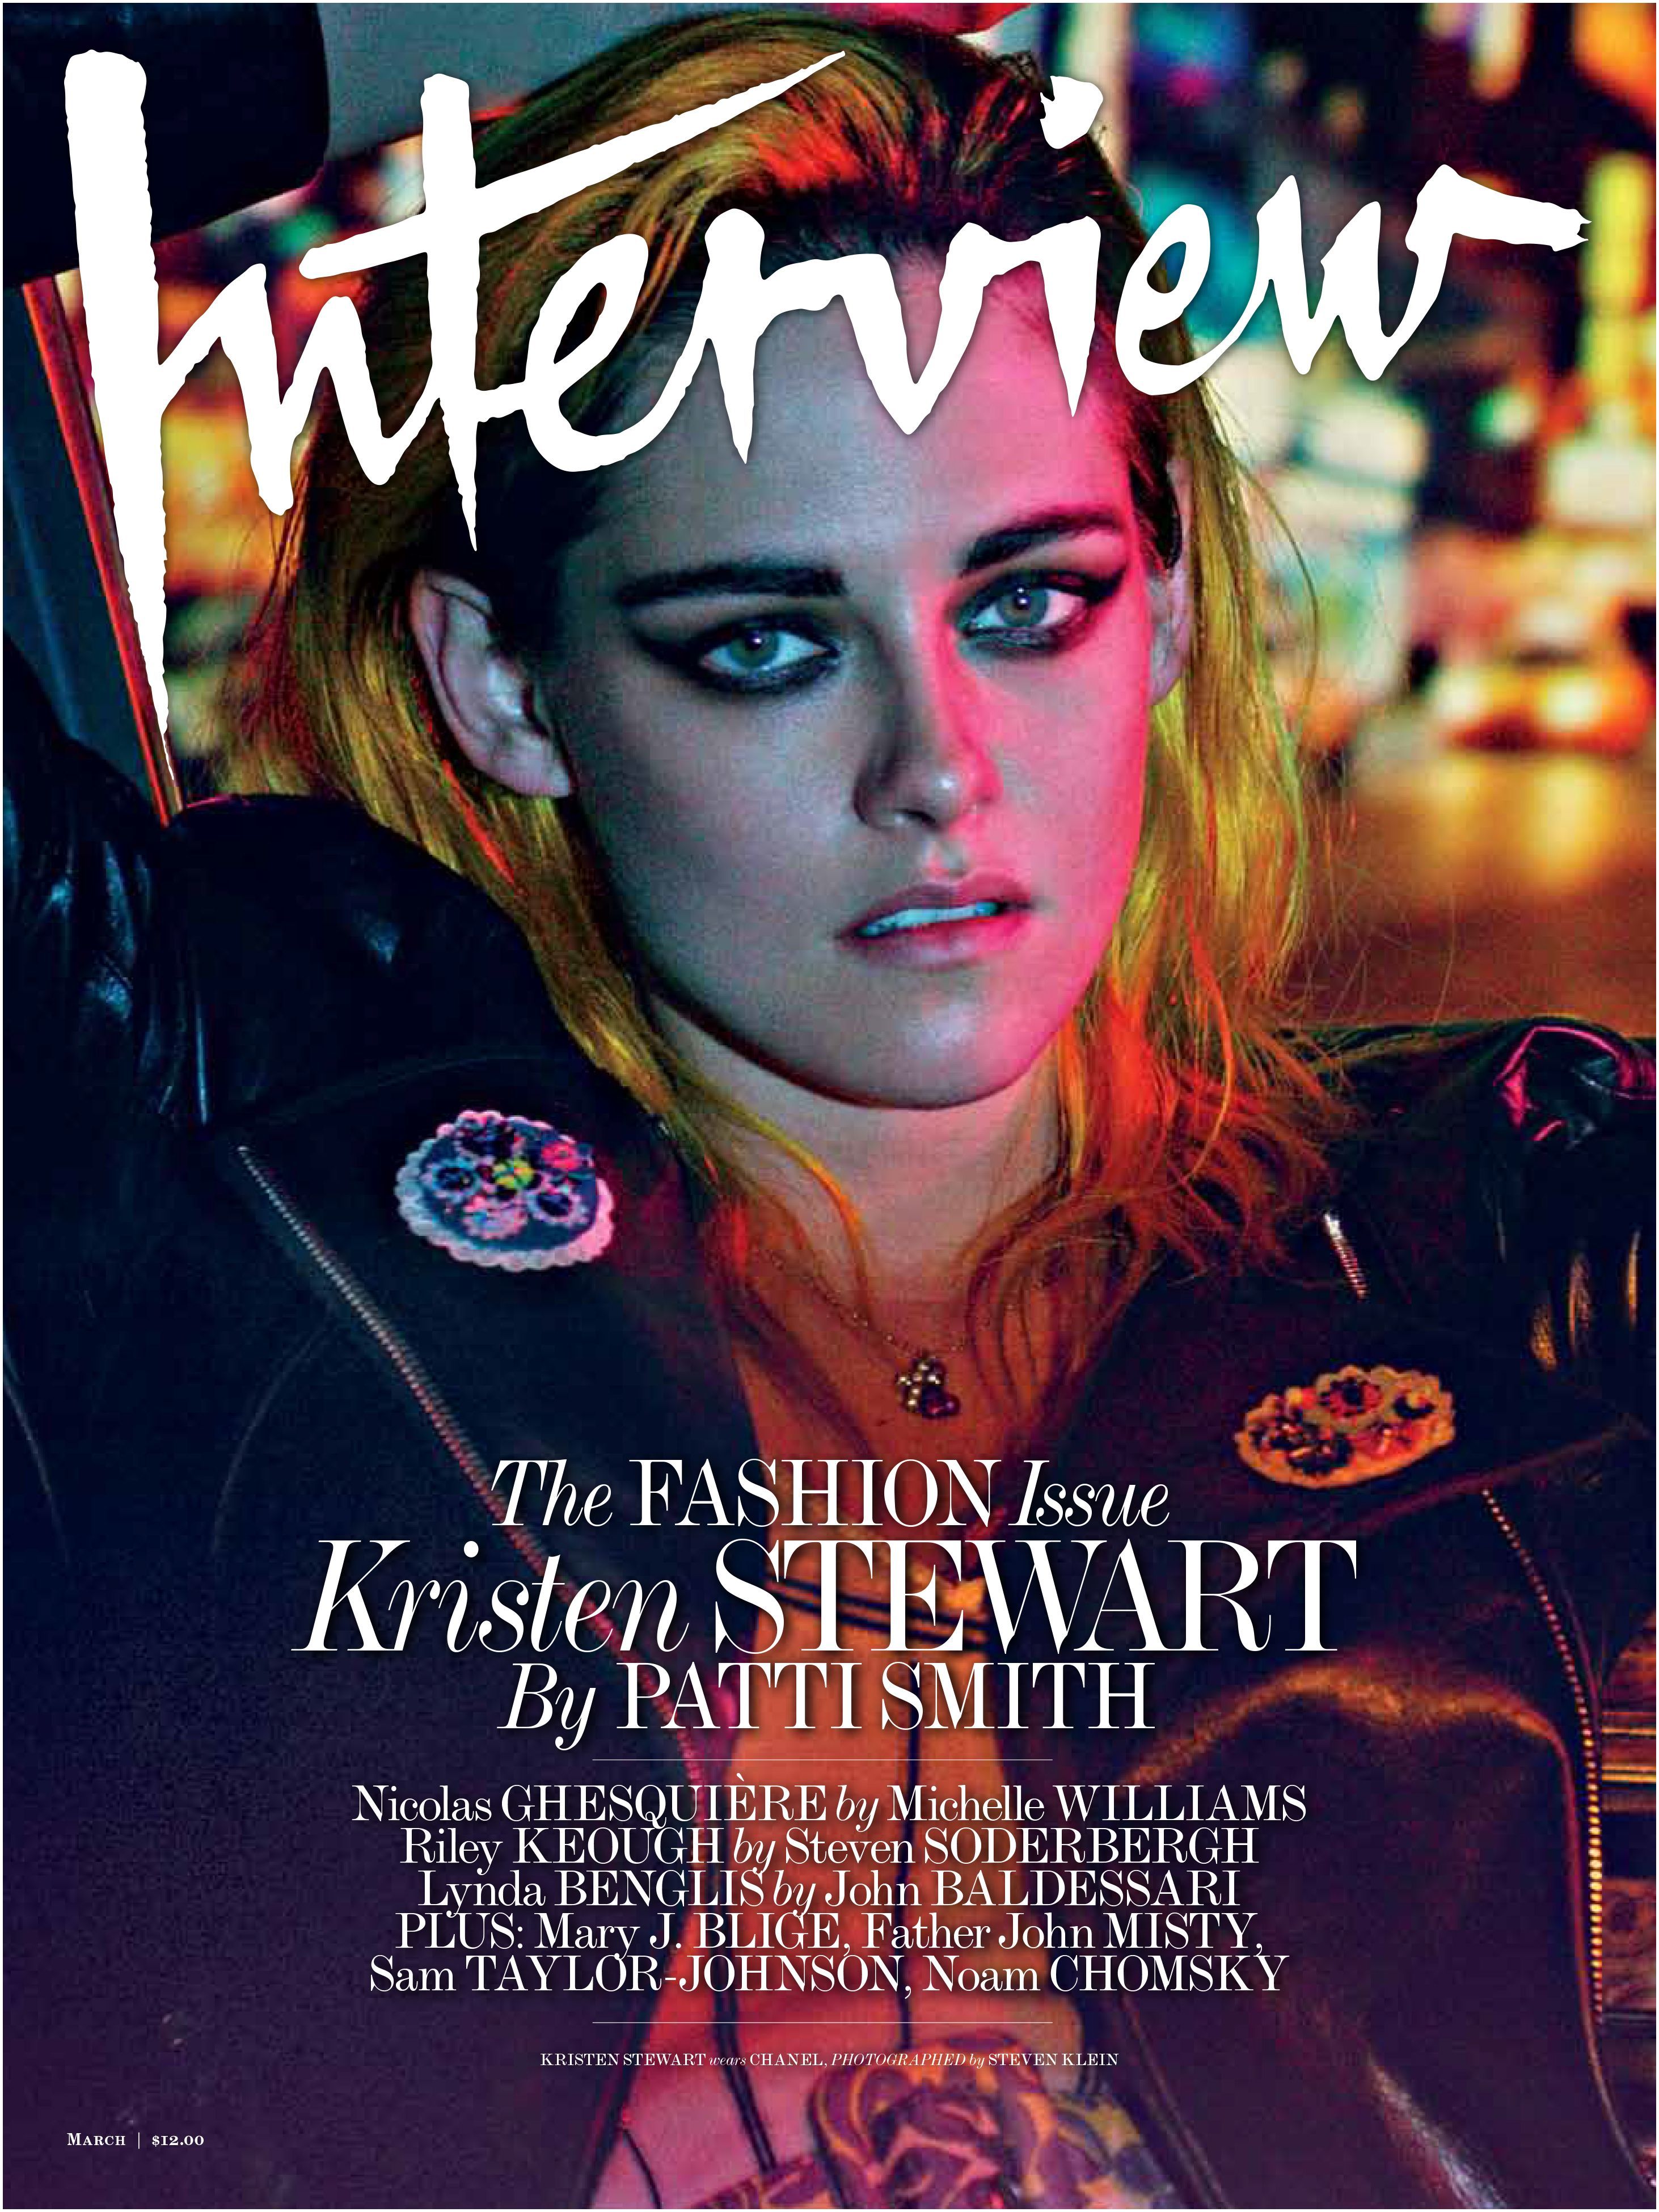 Patti Smith interviewed Kristen Stewart for Interview